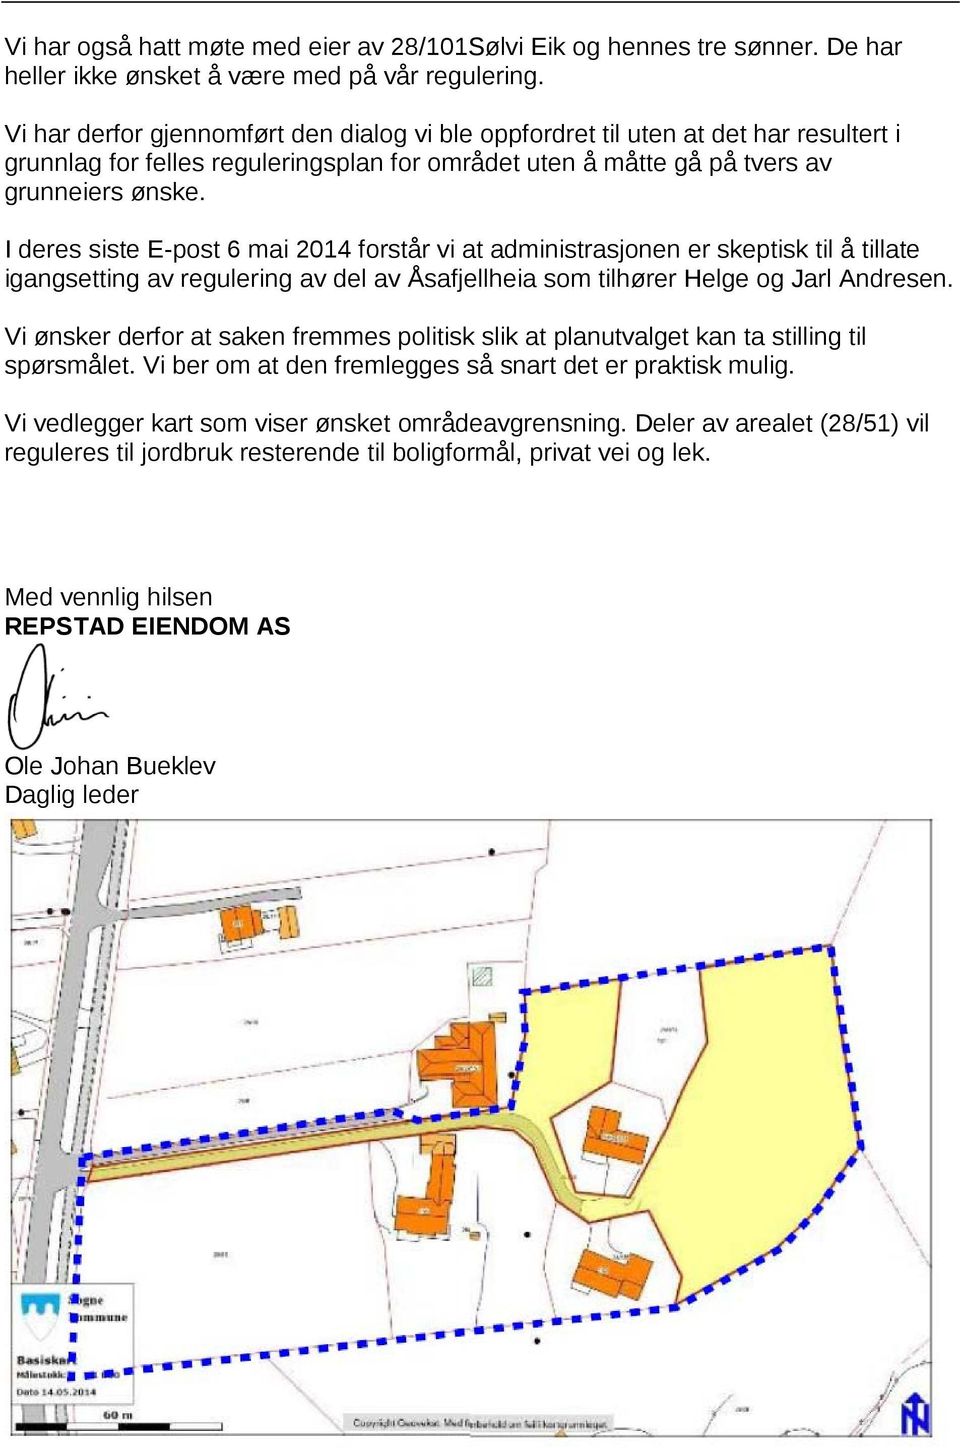 I deres siste E-post 6 mai 2014 forstår vi at administrasjonen er skeptisk til å tillate igangsetting av regulering av del av Åsafjellheia som tilhører Helge og Jarl Andresen.